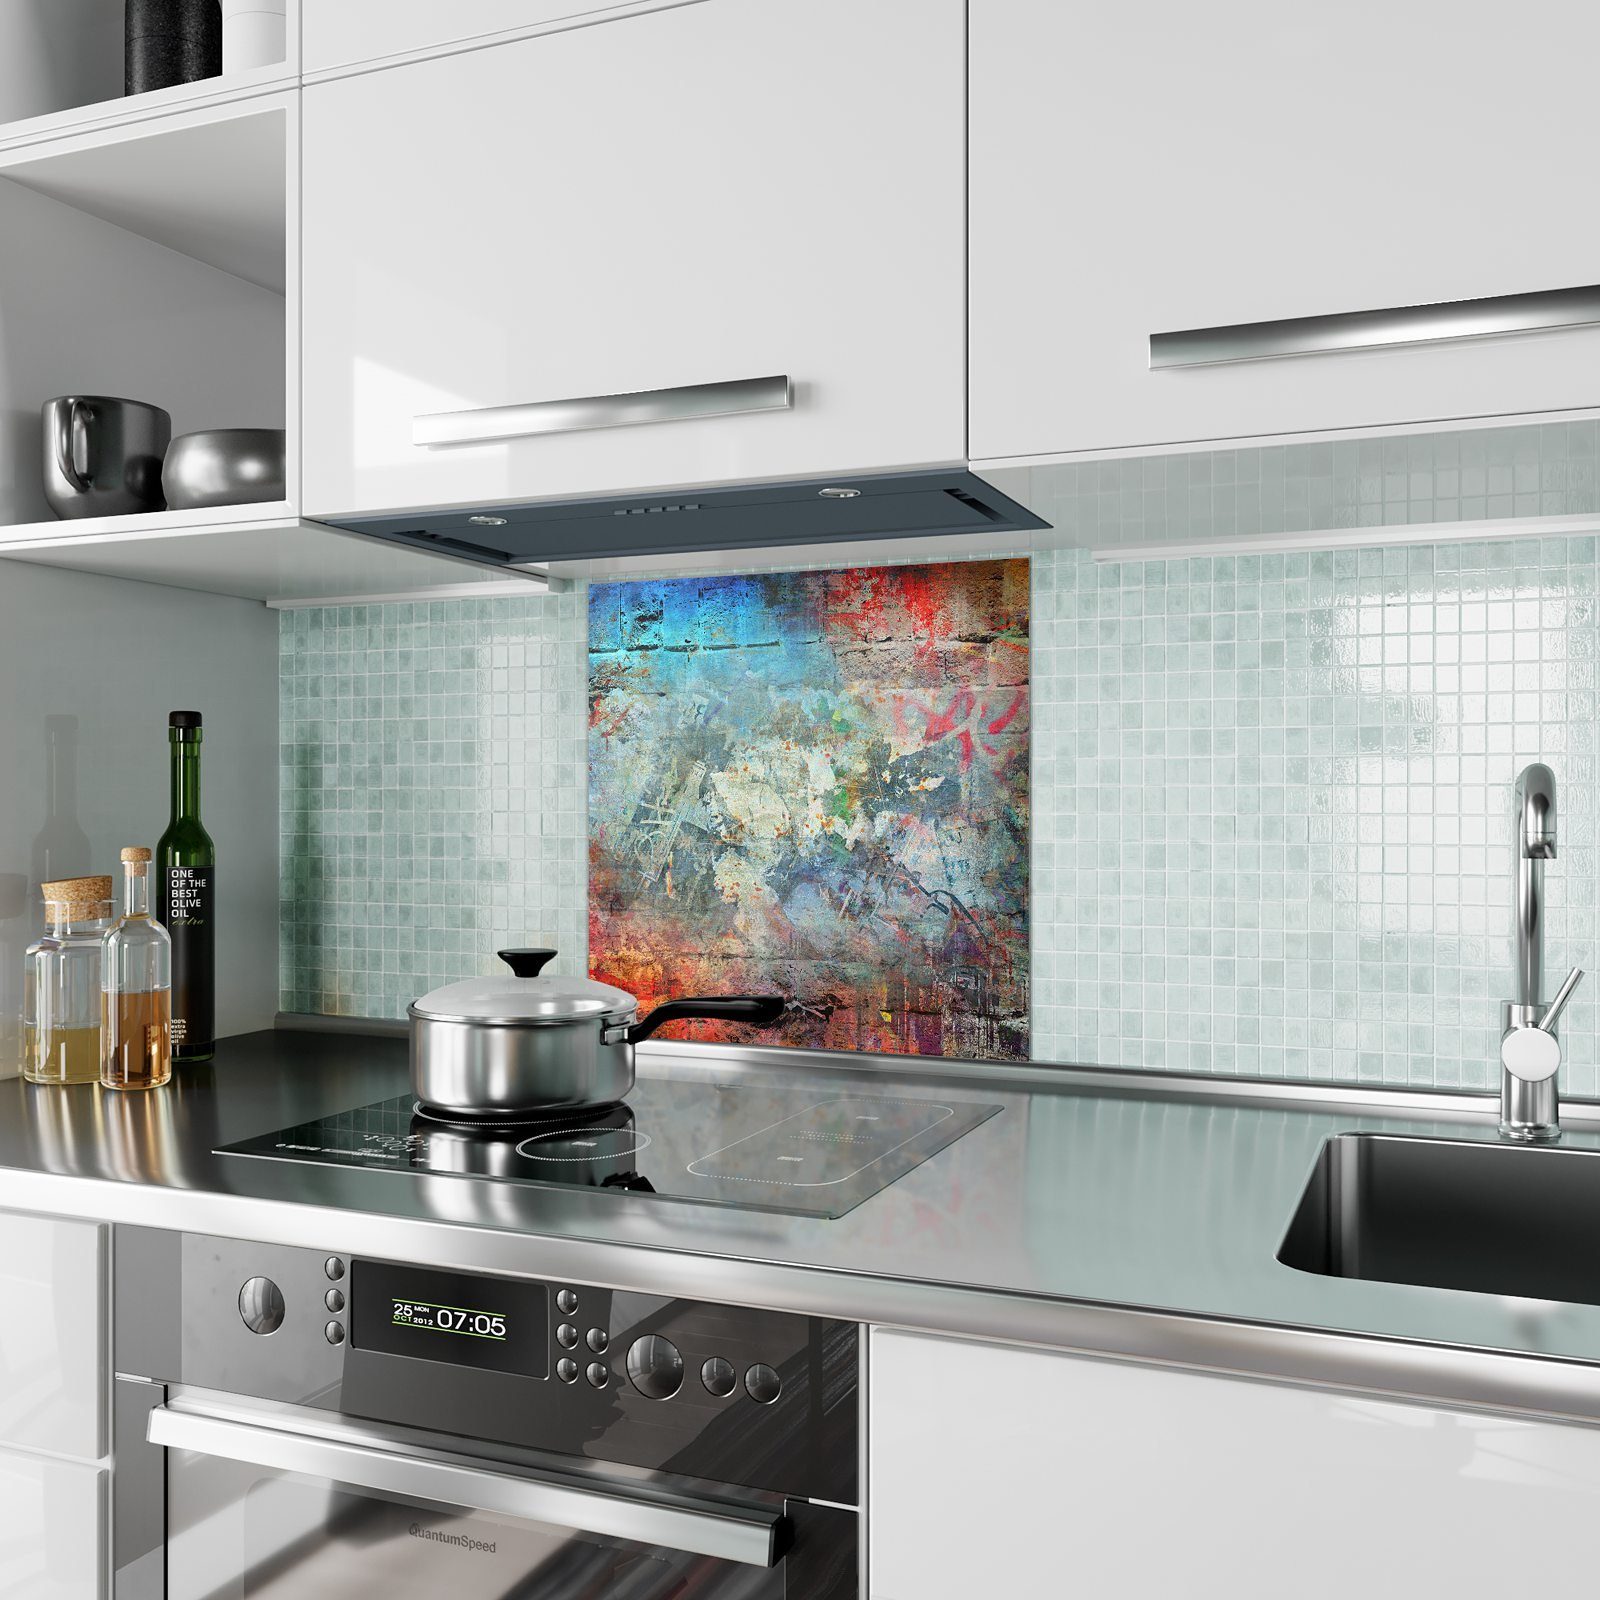 Küchenrückwand mit Bunter Küchenrückwand Spritzschutz Hintergrund Motiv Glas Primedeco